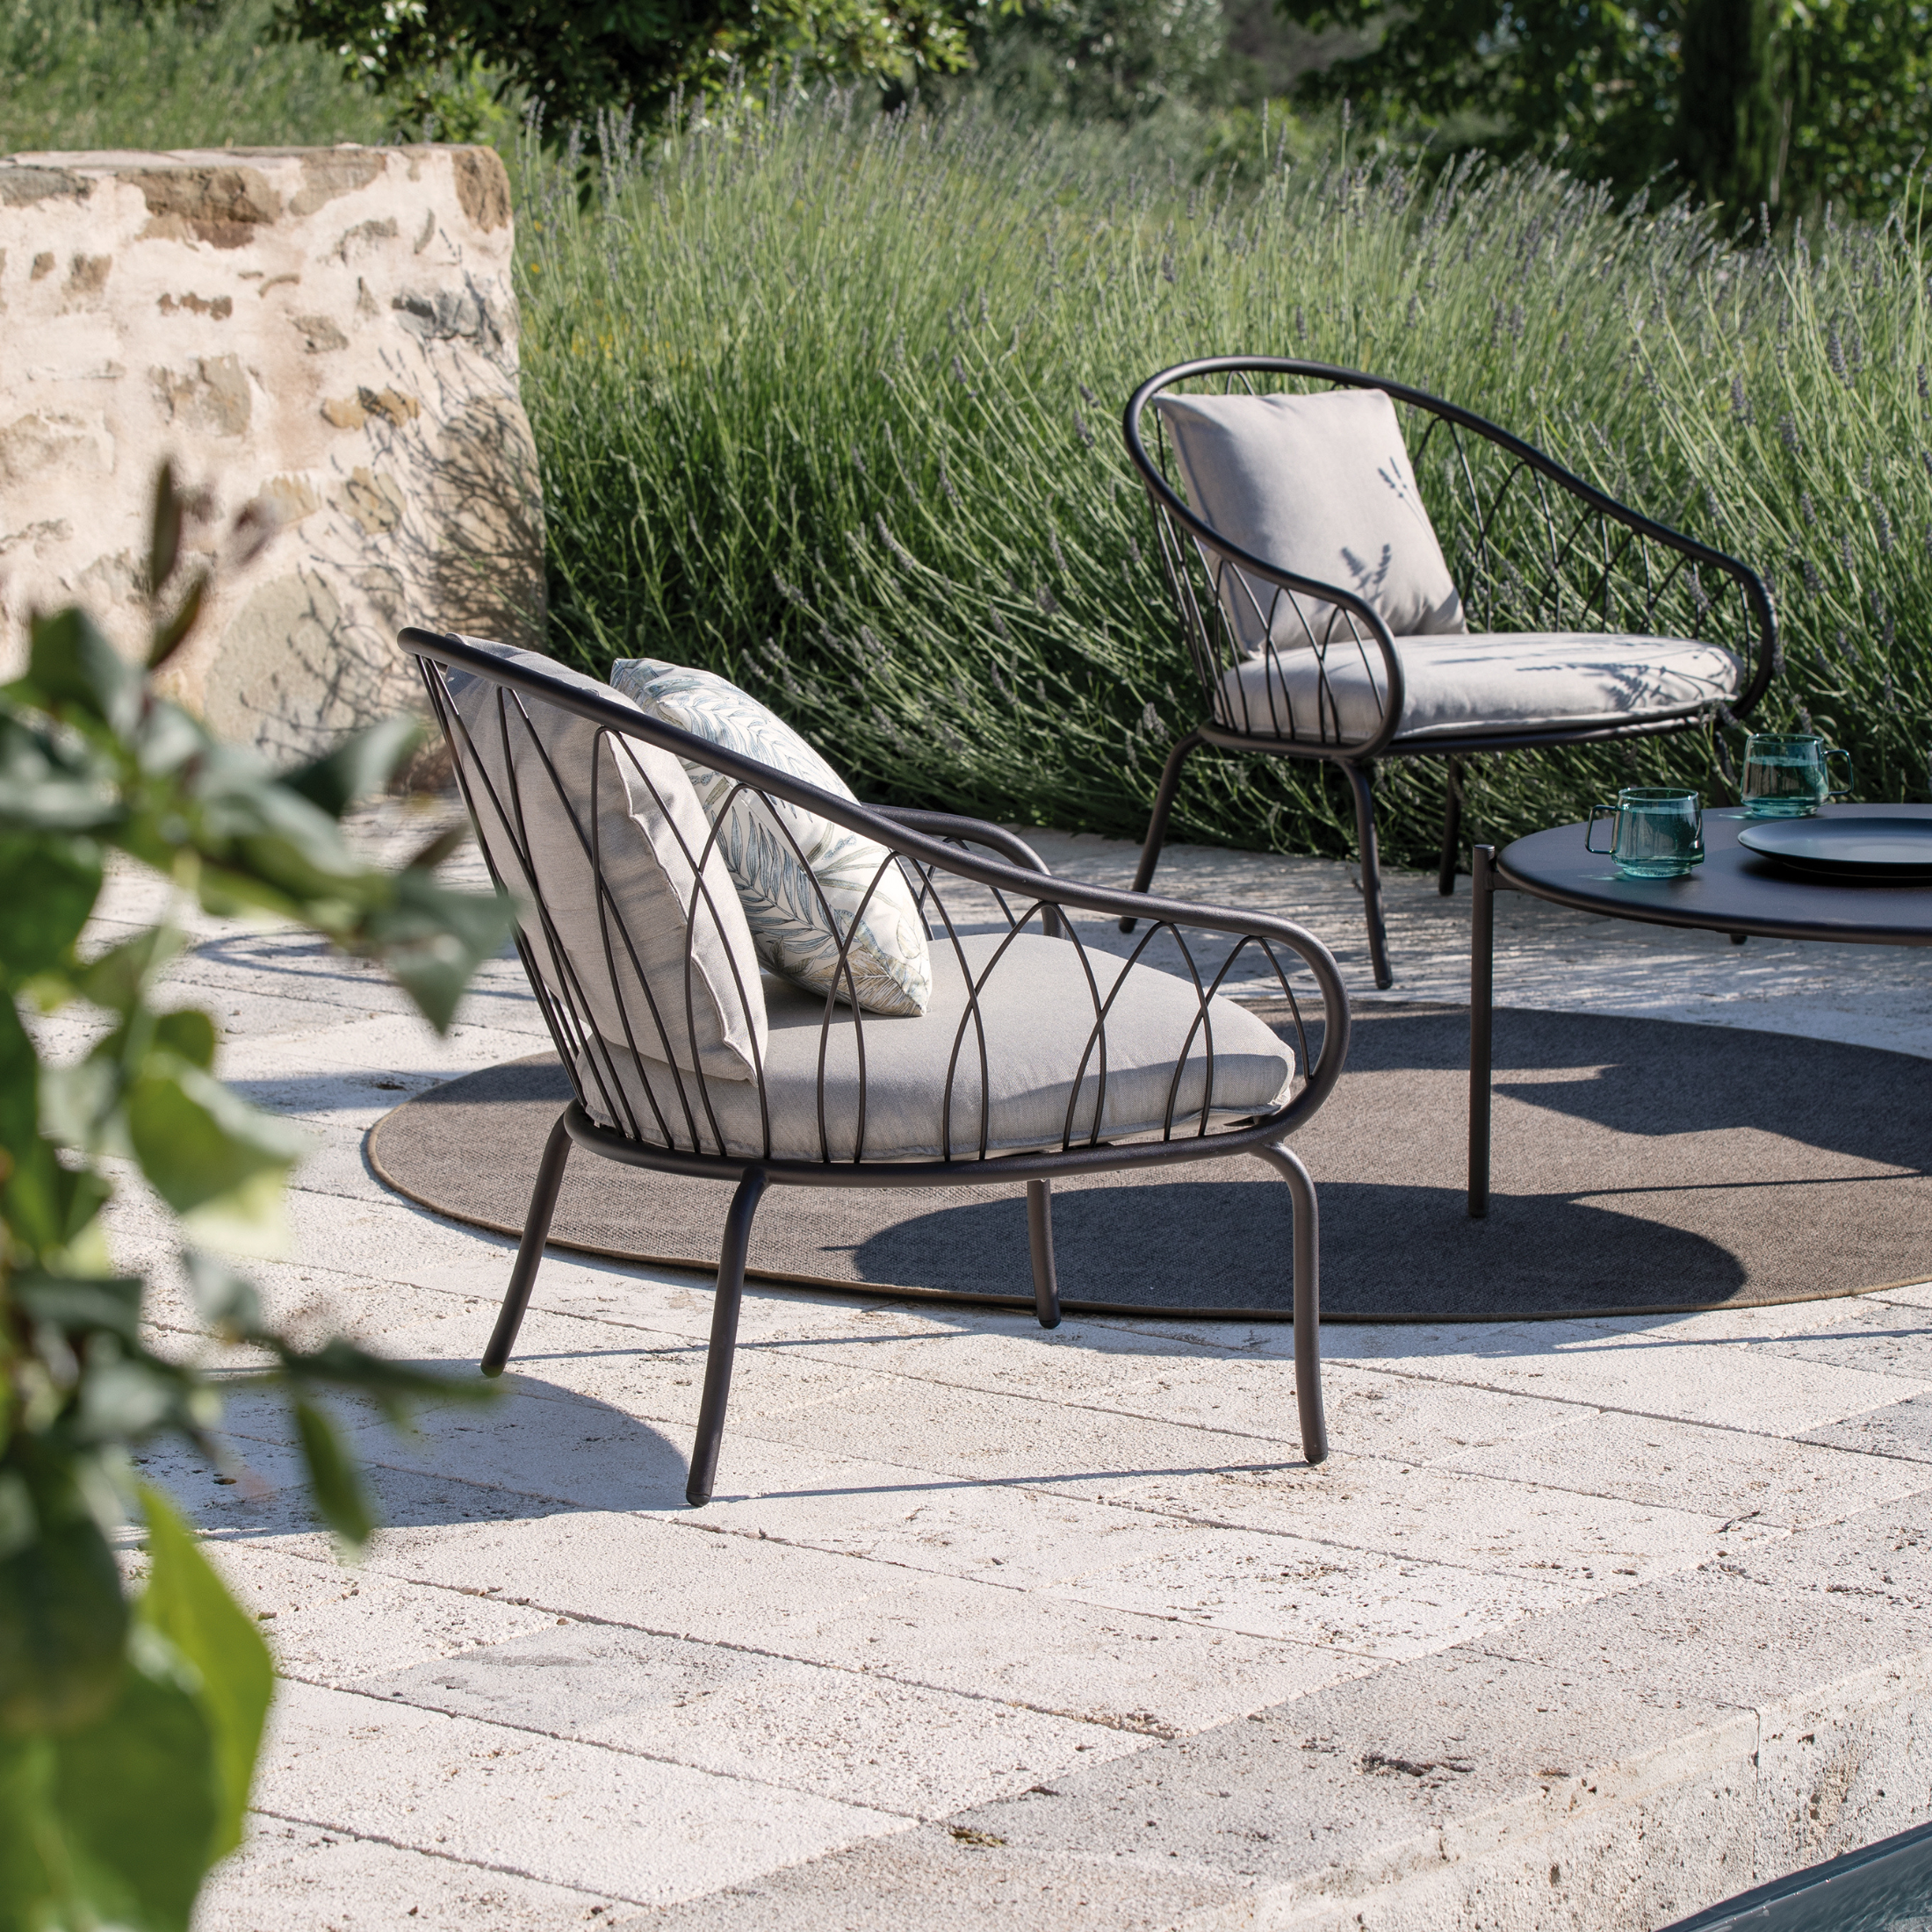 Sillón de jardín bajo de metal "Flora" sillón apilable 75x75 cm 75h